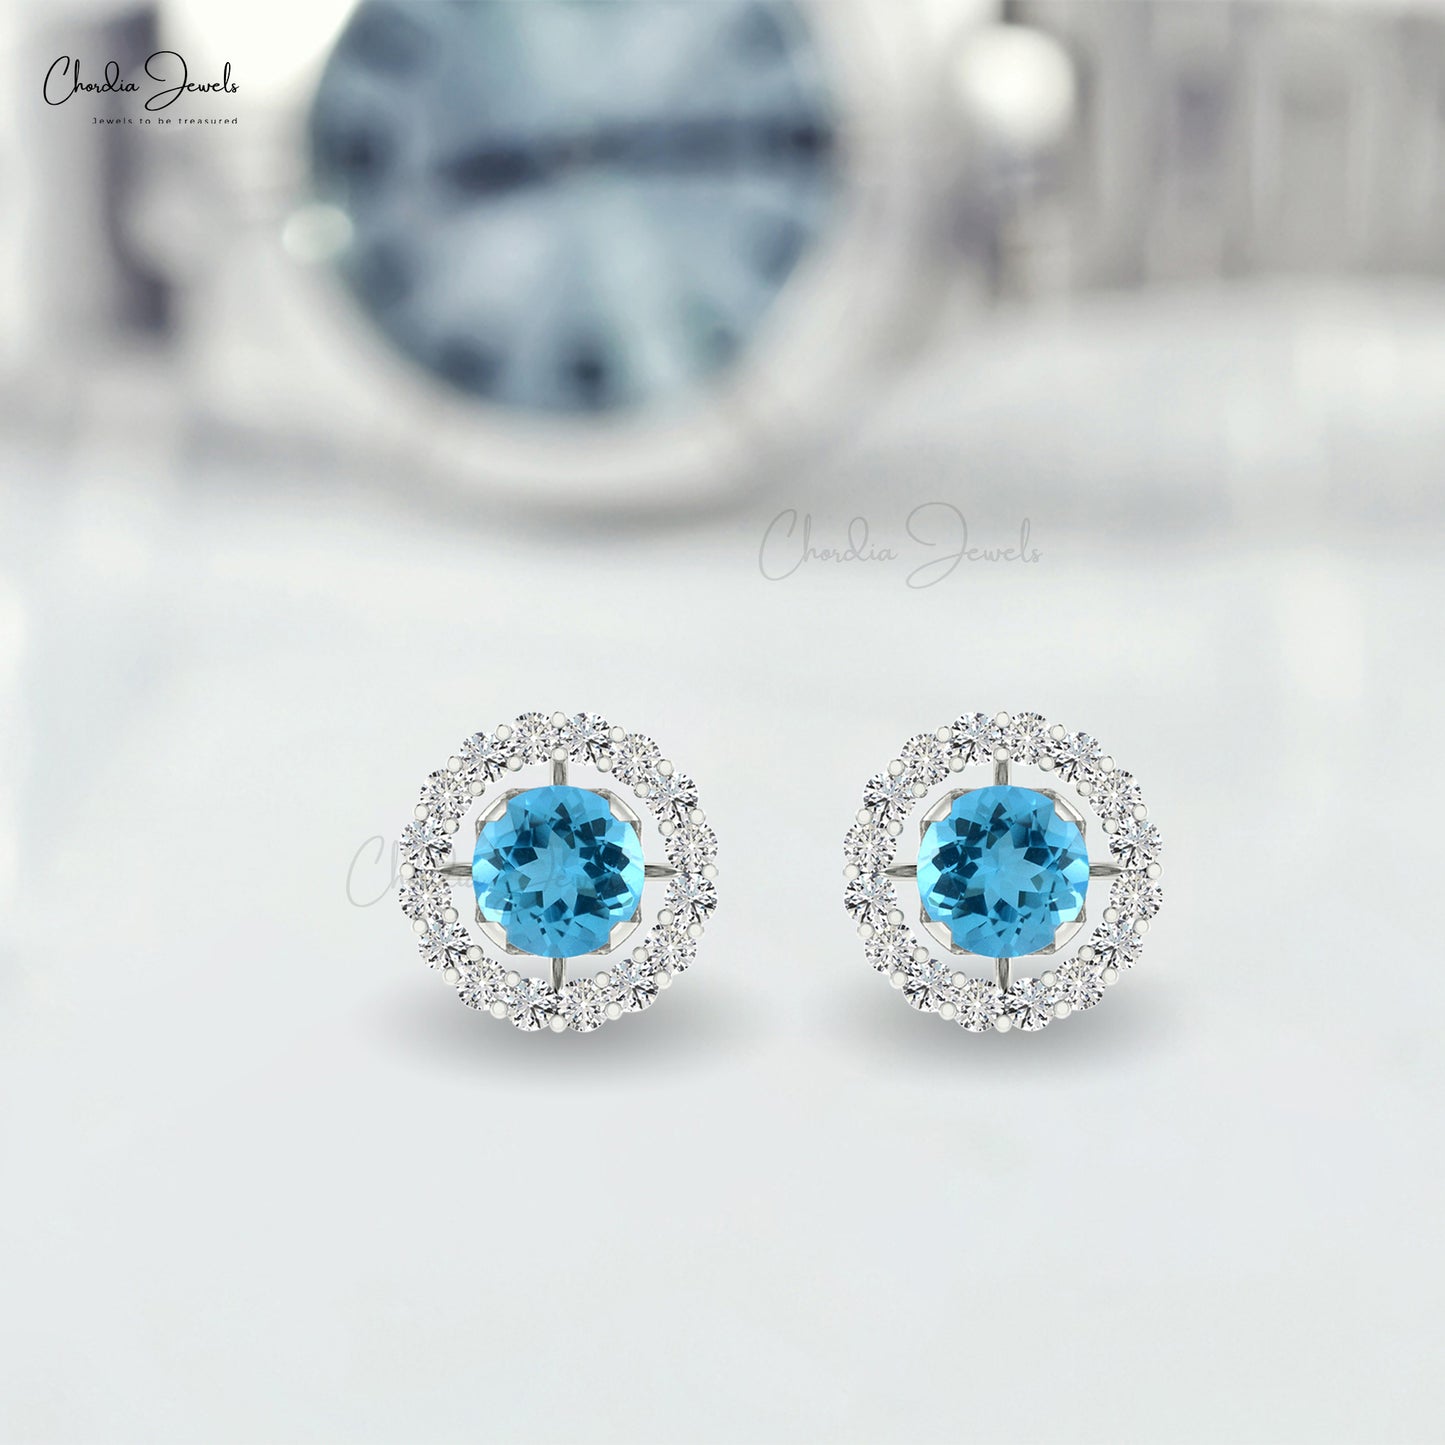 G-H Diamond & Natural Swiss Blue Topaz Detachable Halo Earrings in 14K Gold for Her